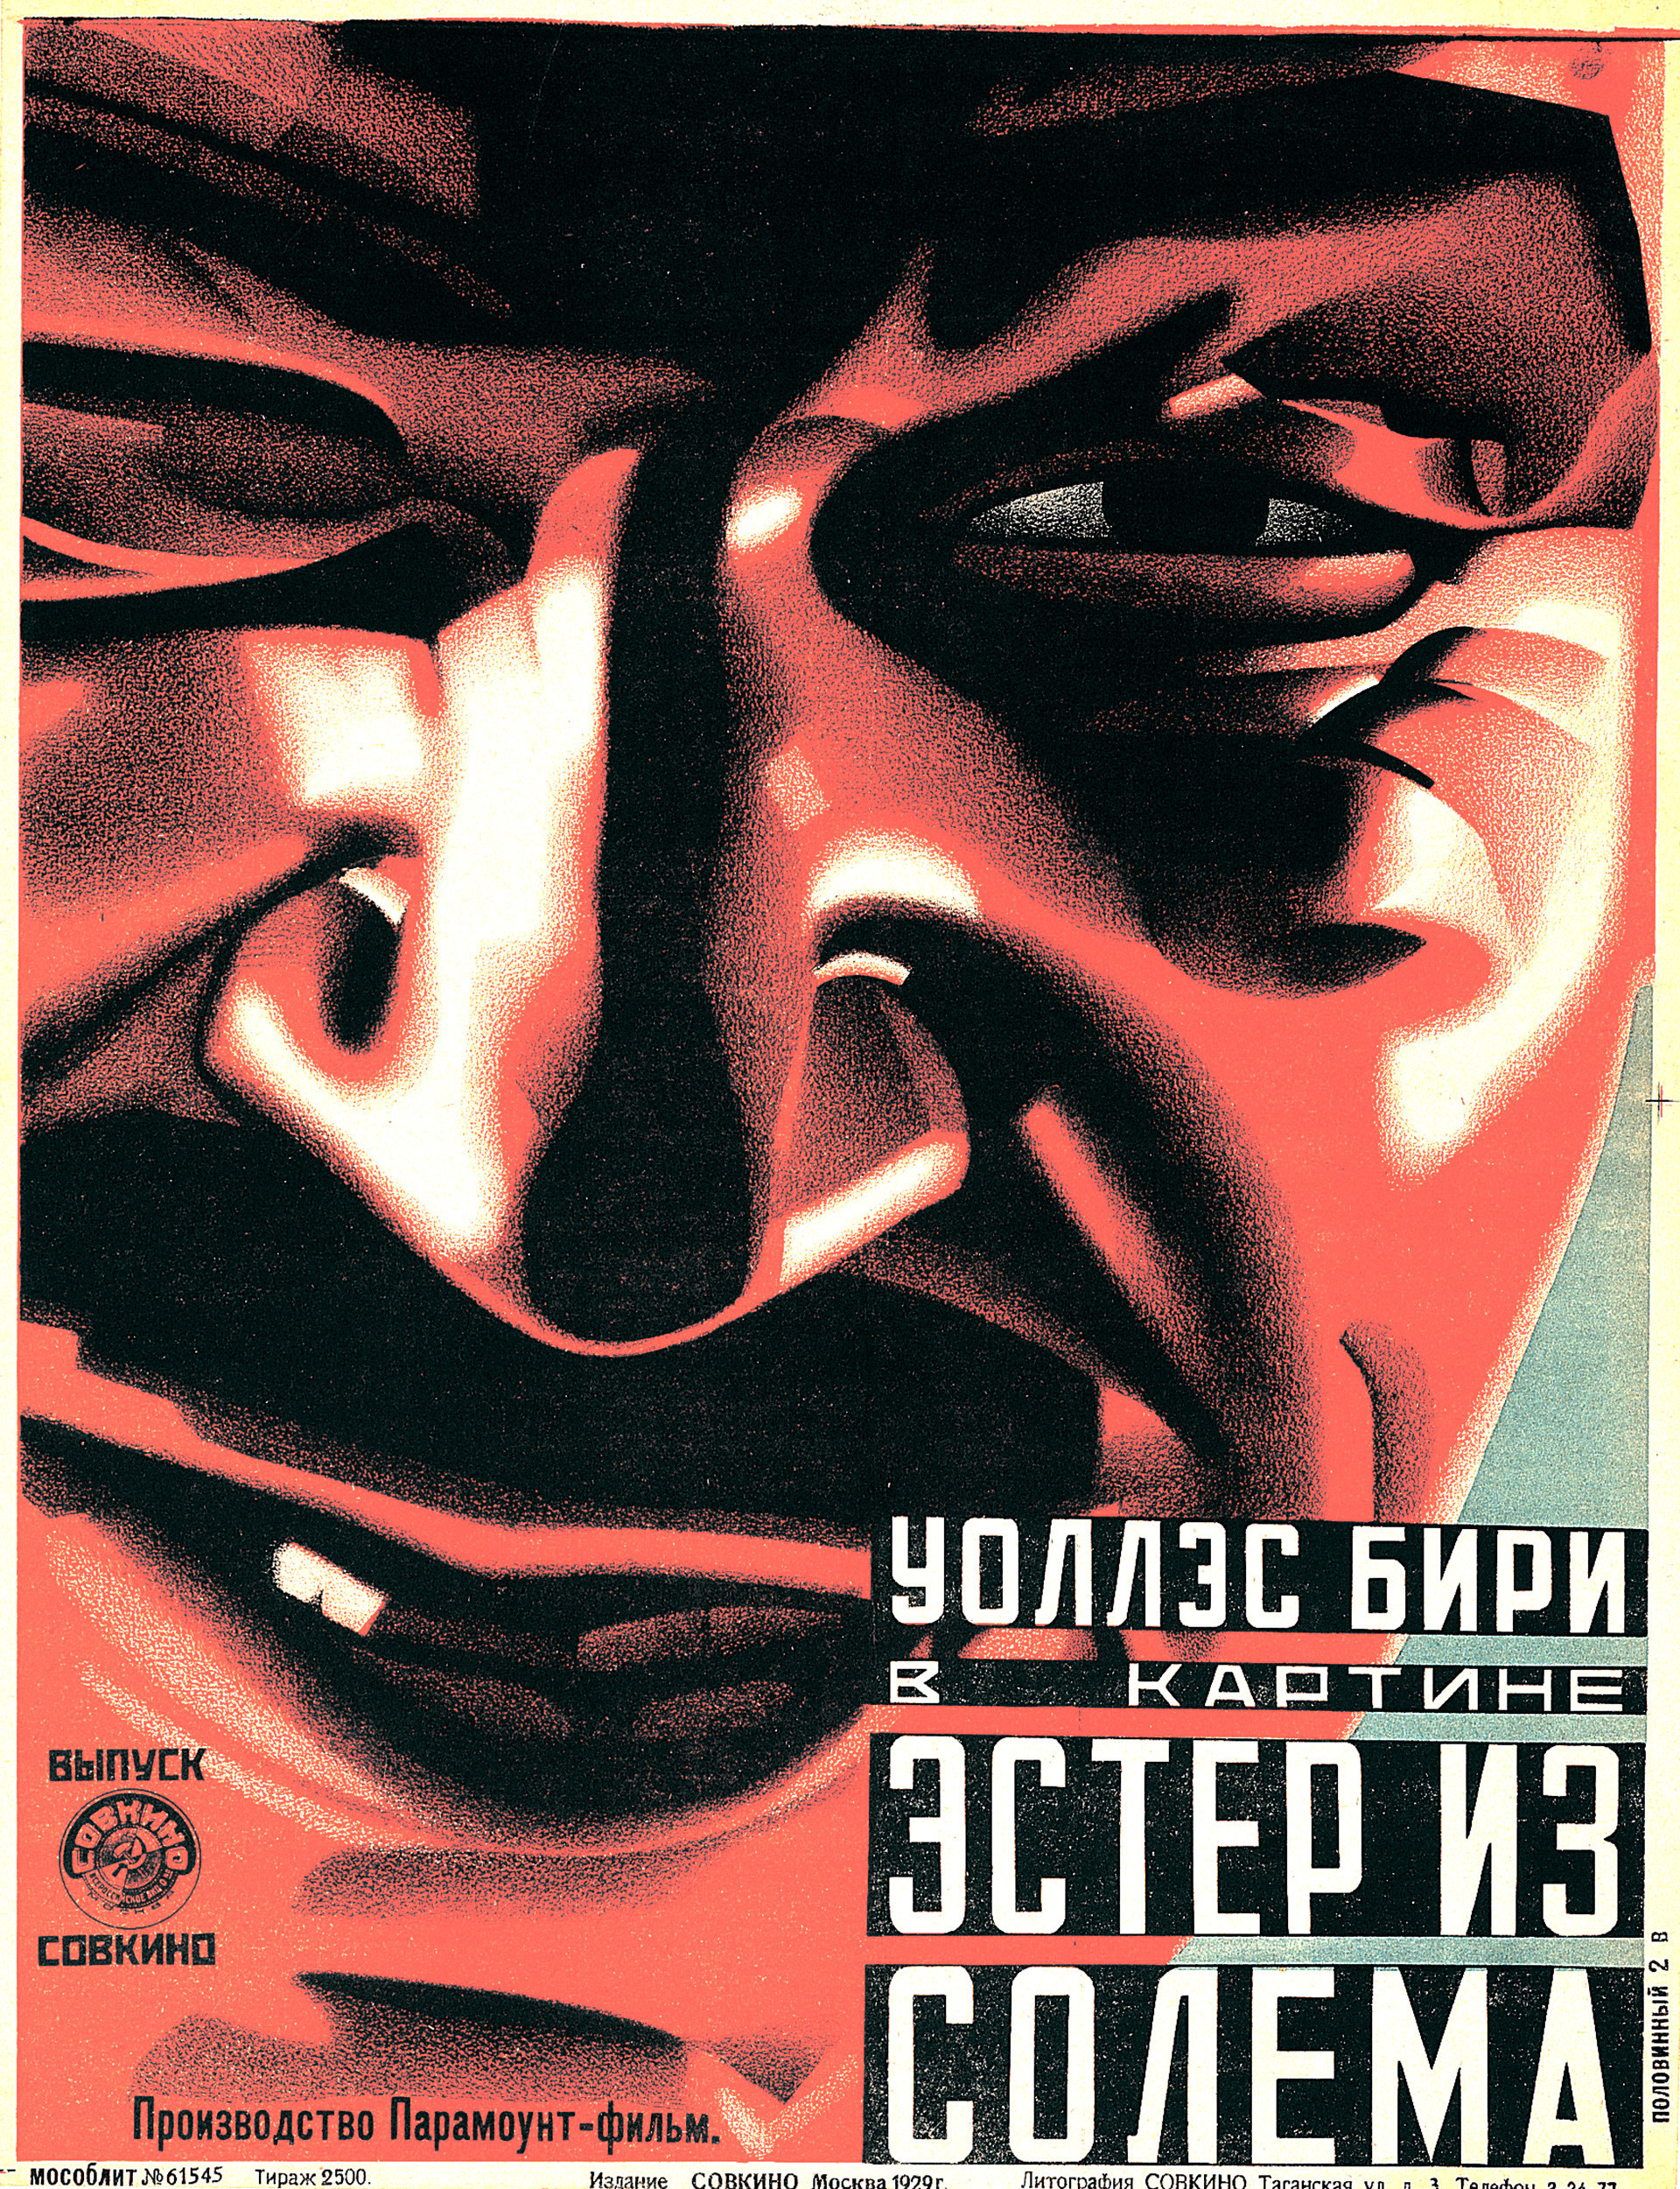 Anônimo, cartaz do filme ‘Ester iz Solema’, 1929